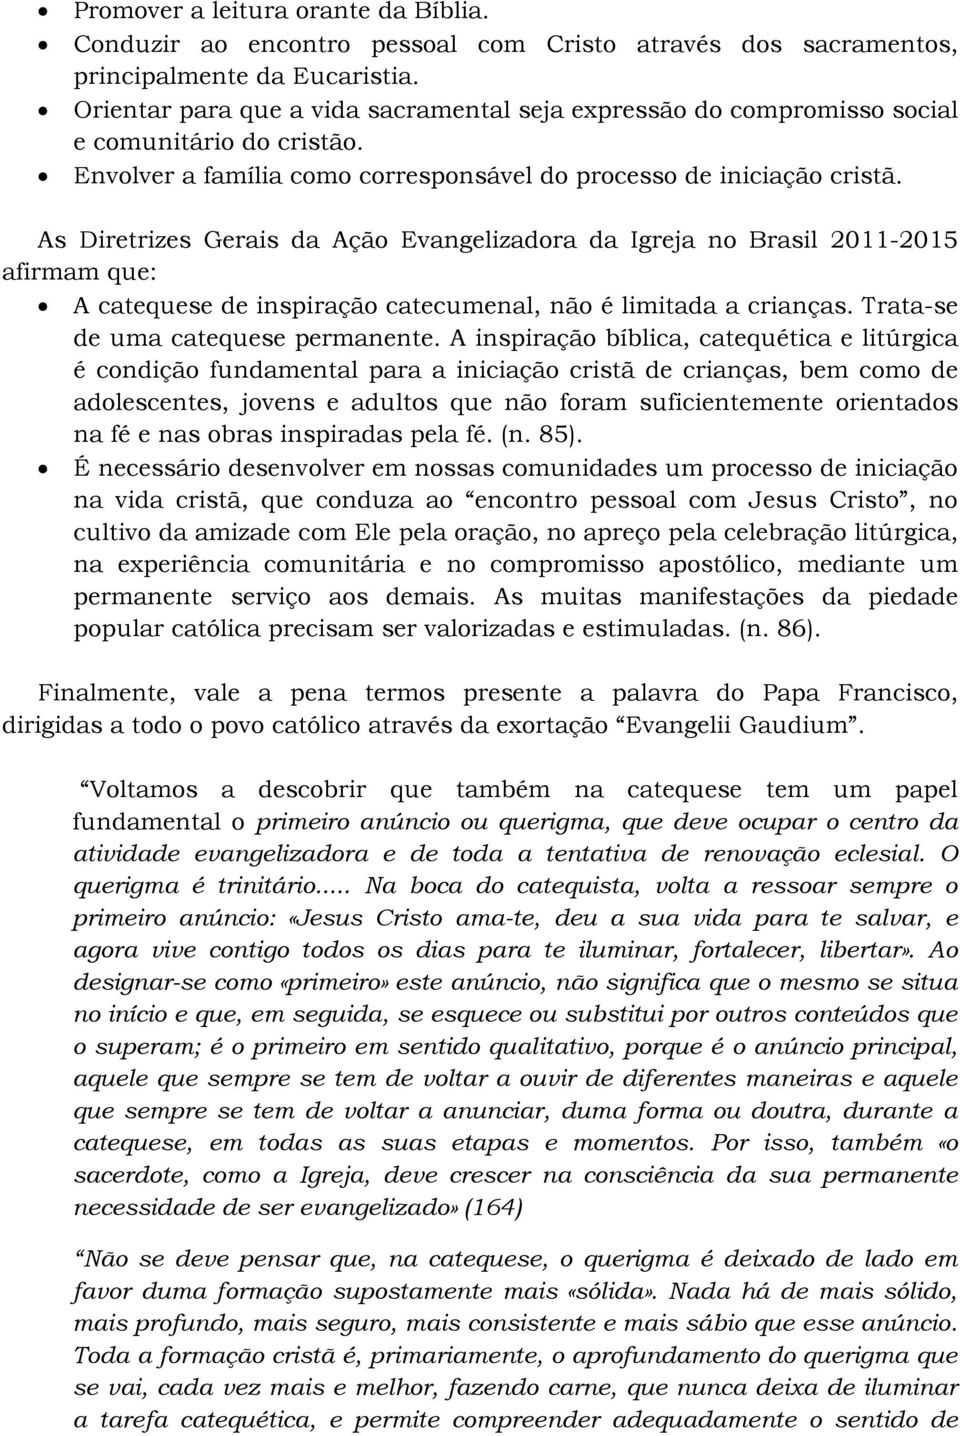 As Diretrizes Gerais da Ação Evangelizadora da Igreja no Brasil 2011-2015 afirmam que: A catequese de inspiração catecumenal, não é limitada a crianças. Trata-se de uma catequese permanente.